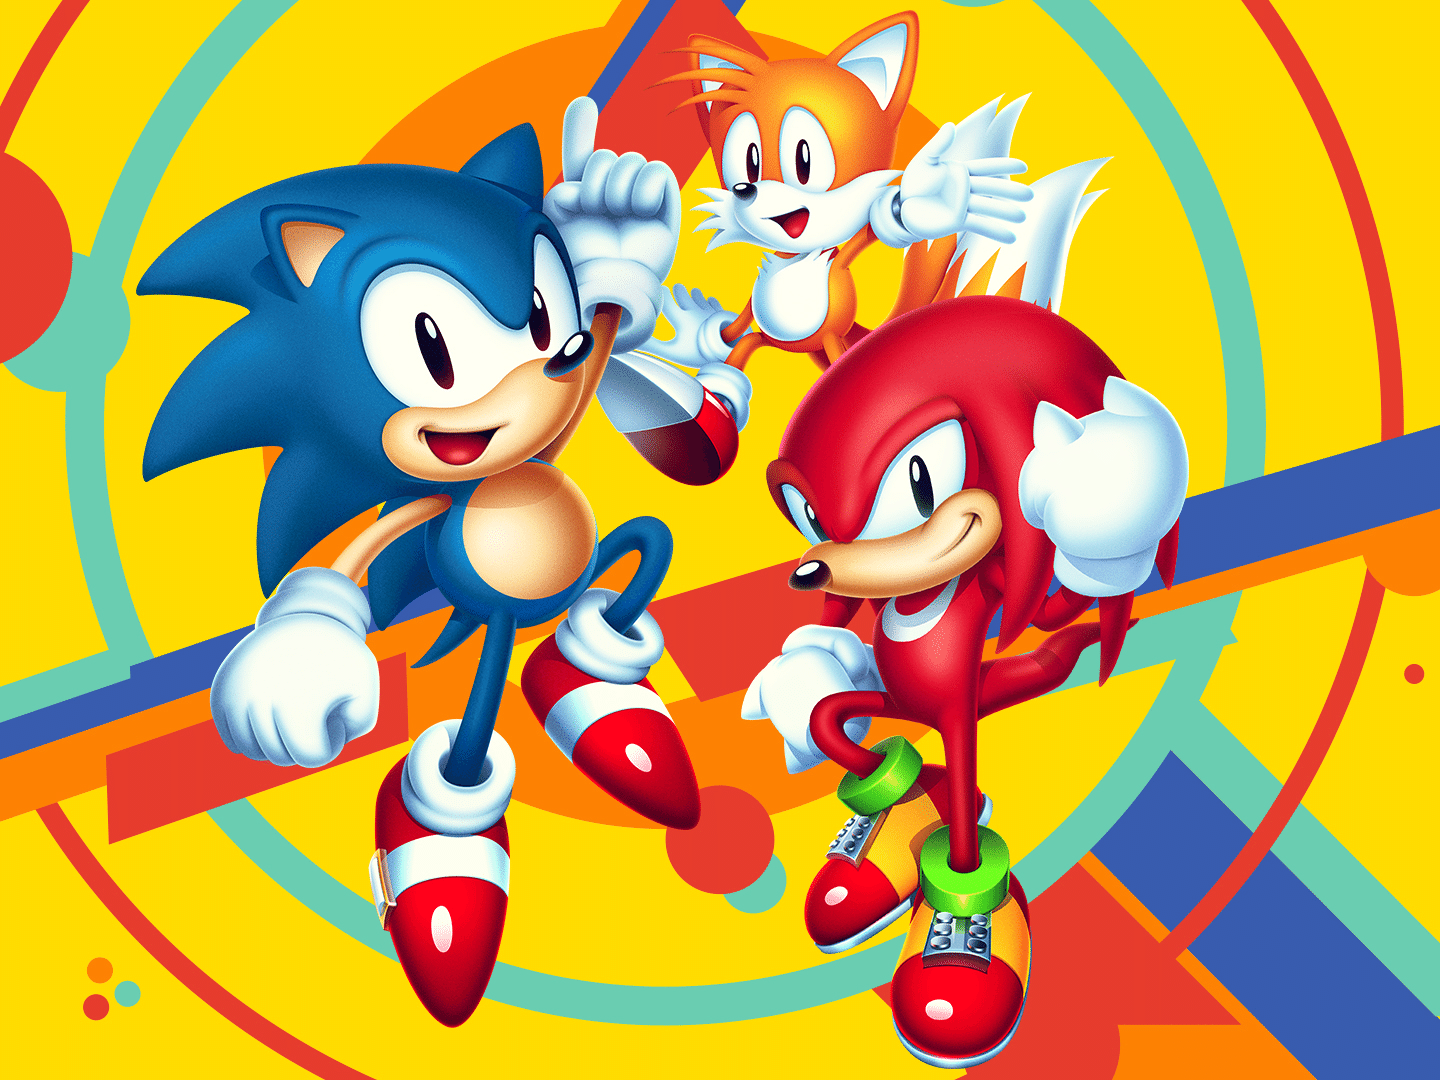 Nova animação de Sonic na Netflix ganha teaser inédito